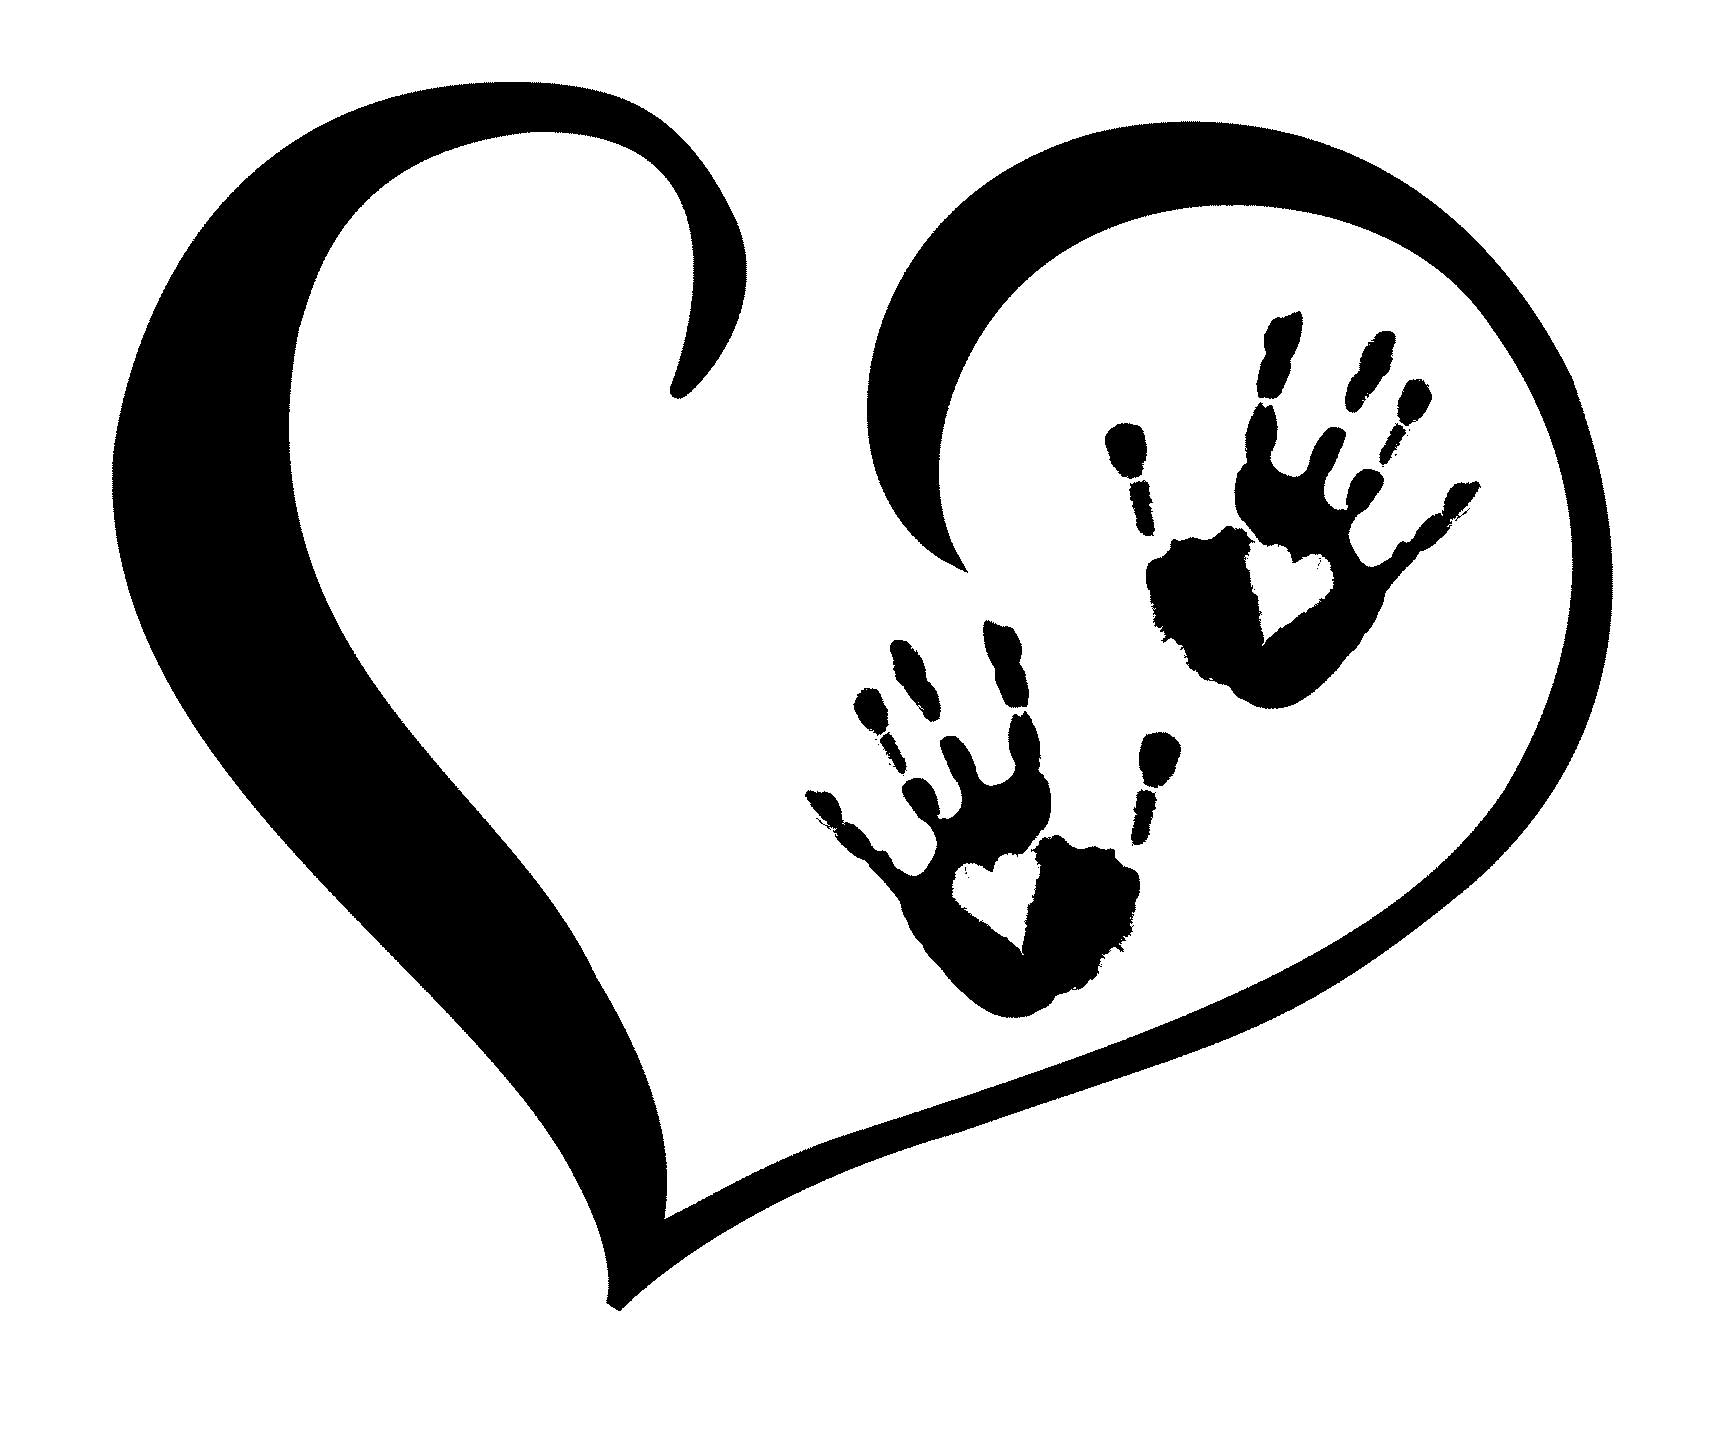 Handprint heart clipart 